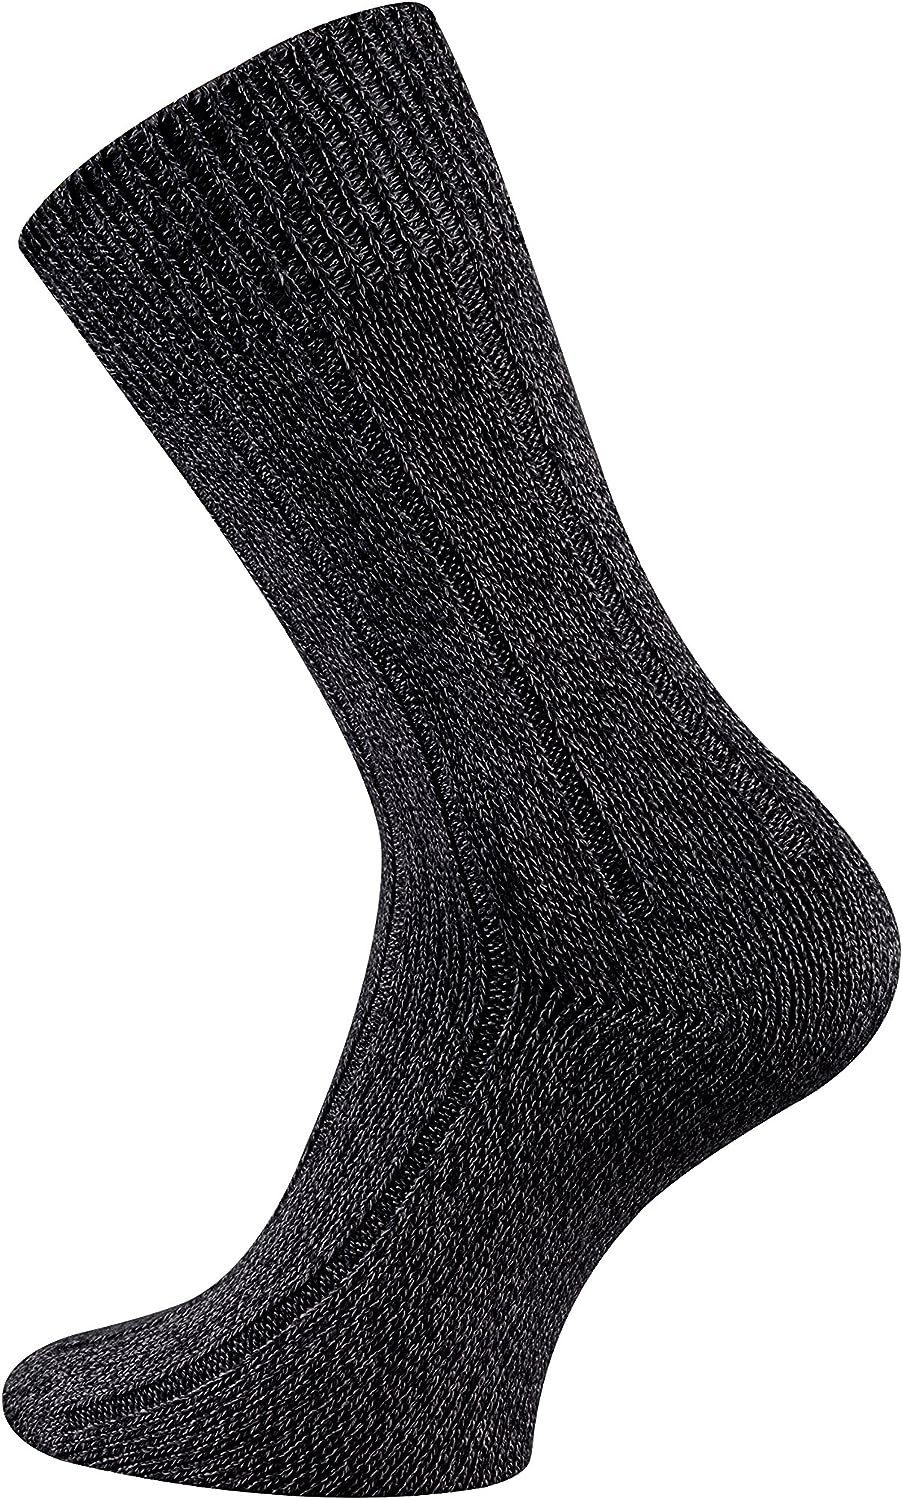 TippTexx 24 Socken 3 Paar warme Winter Bambussocken mit Baumwolle, Ripp-Struktur Schwarz